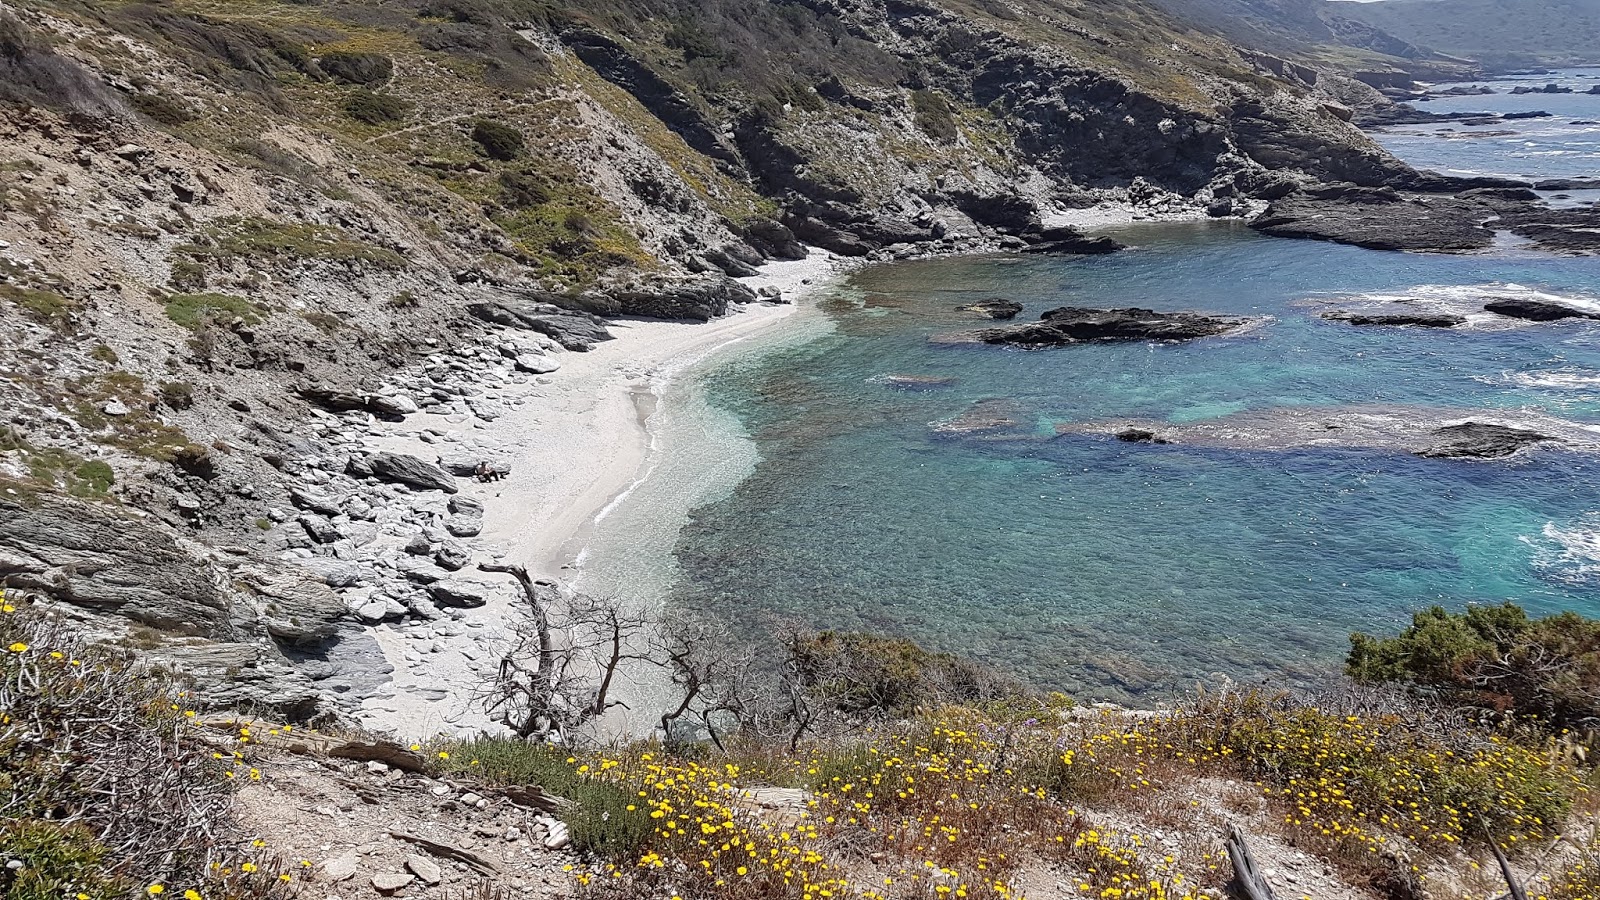 Photo of Spiaggia Isola dei Porri with straight shore